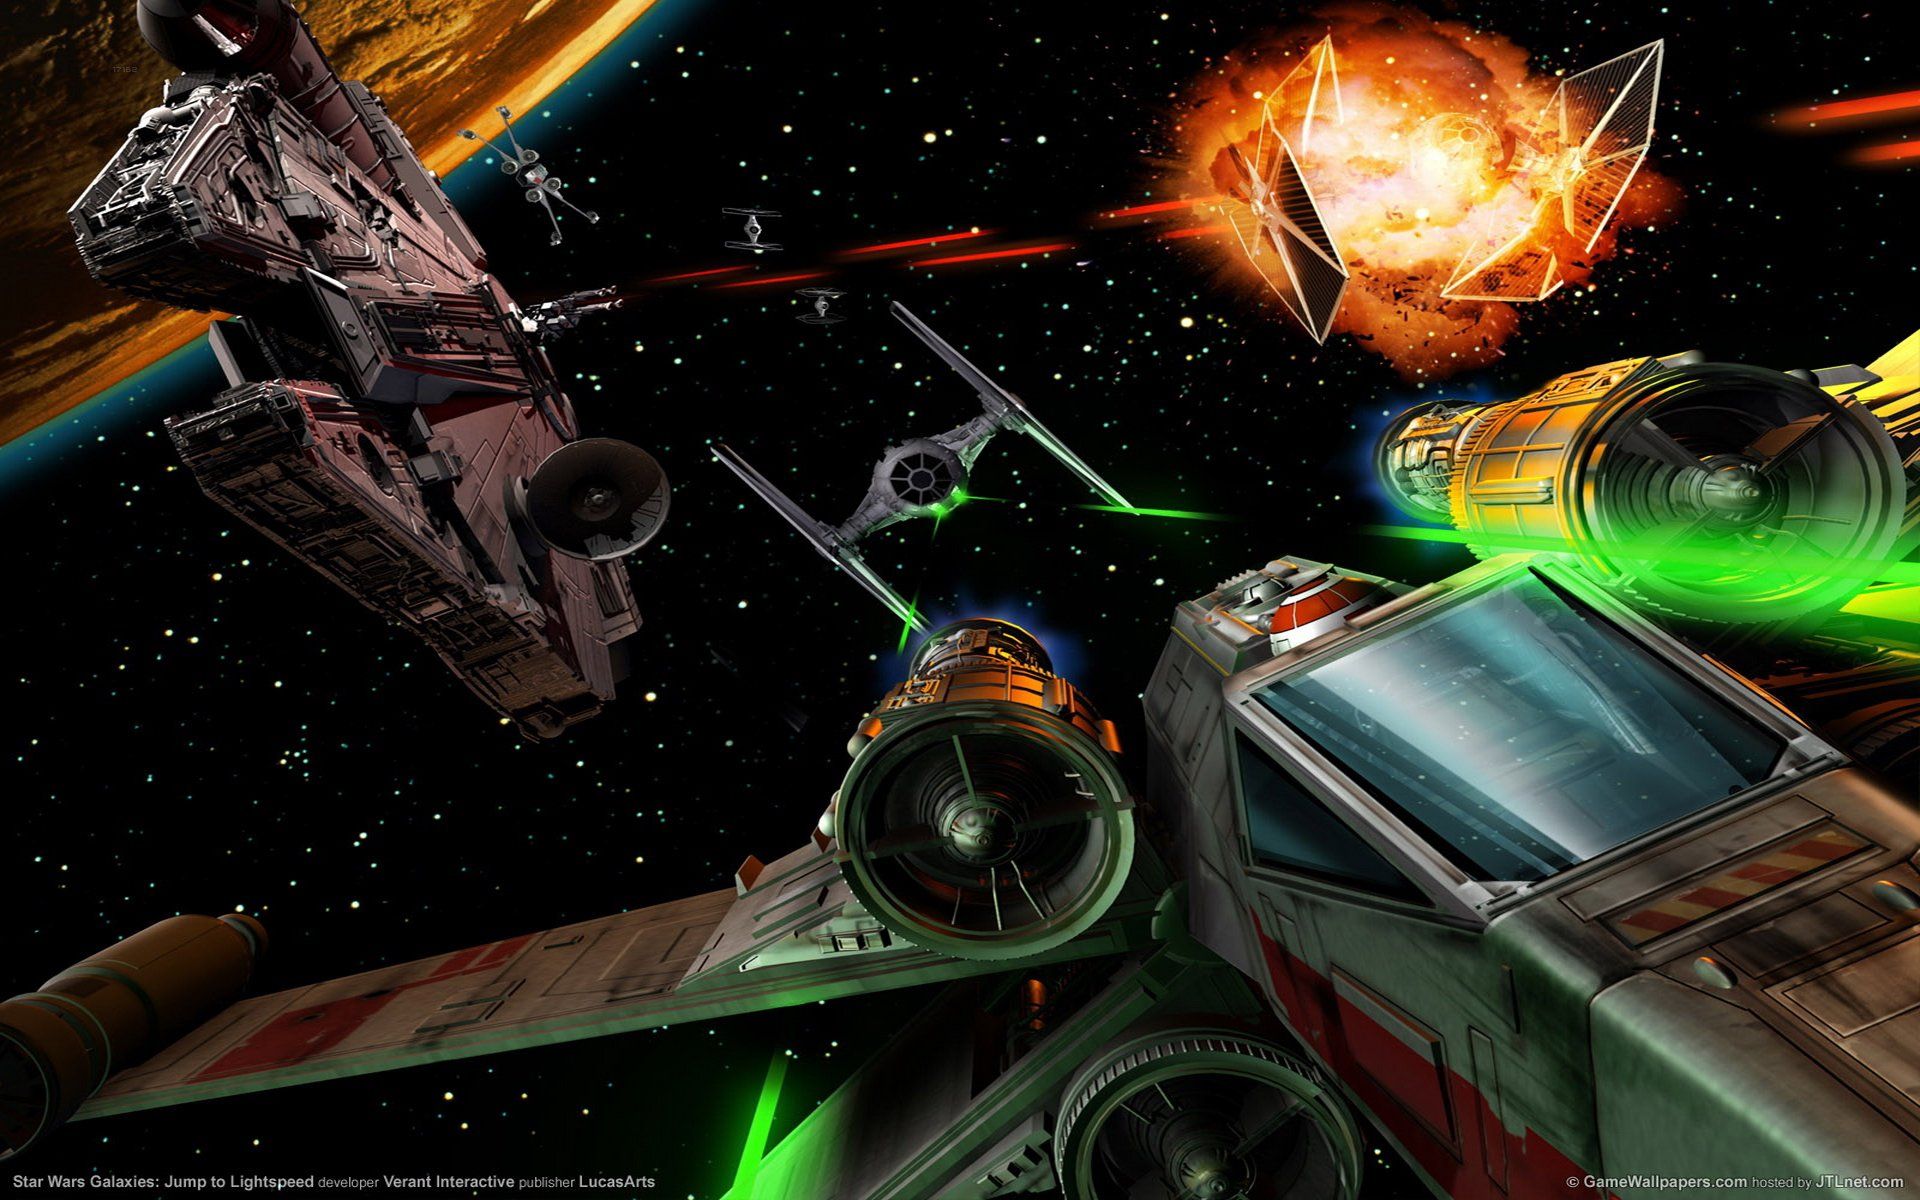 Star Wars Millennium Falcon Space Ship Combat Action Adventure